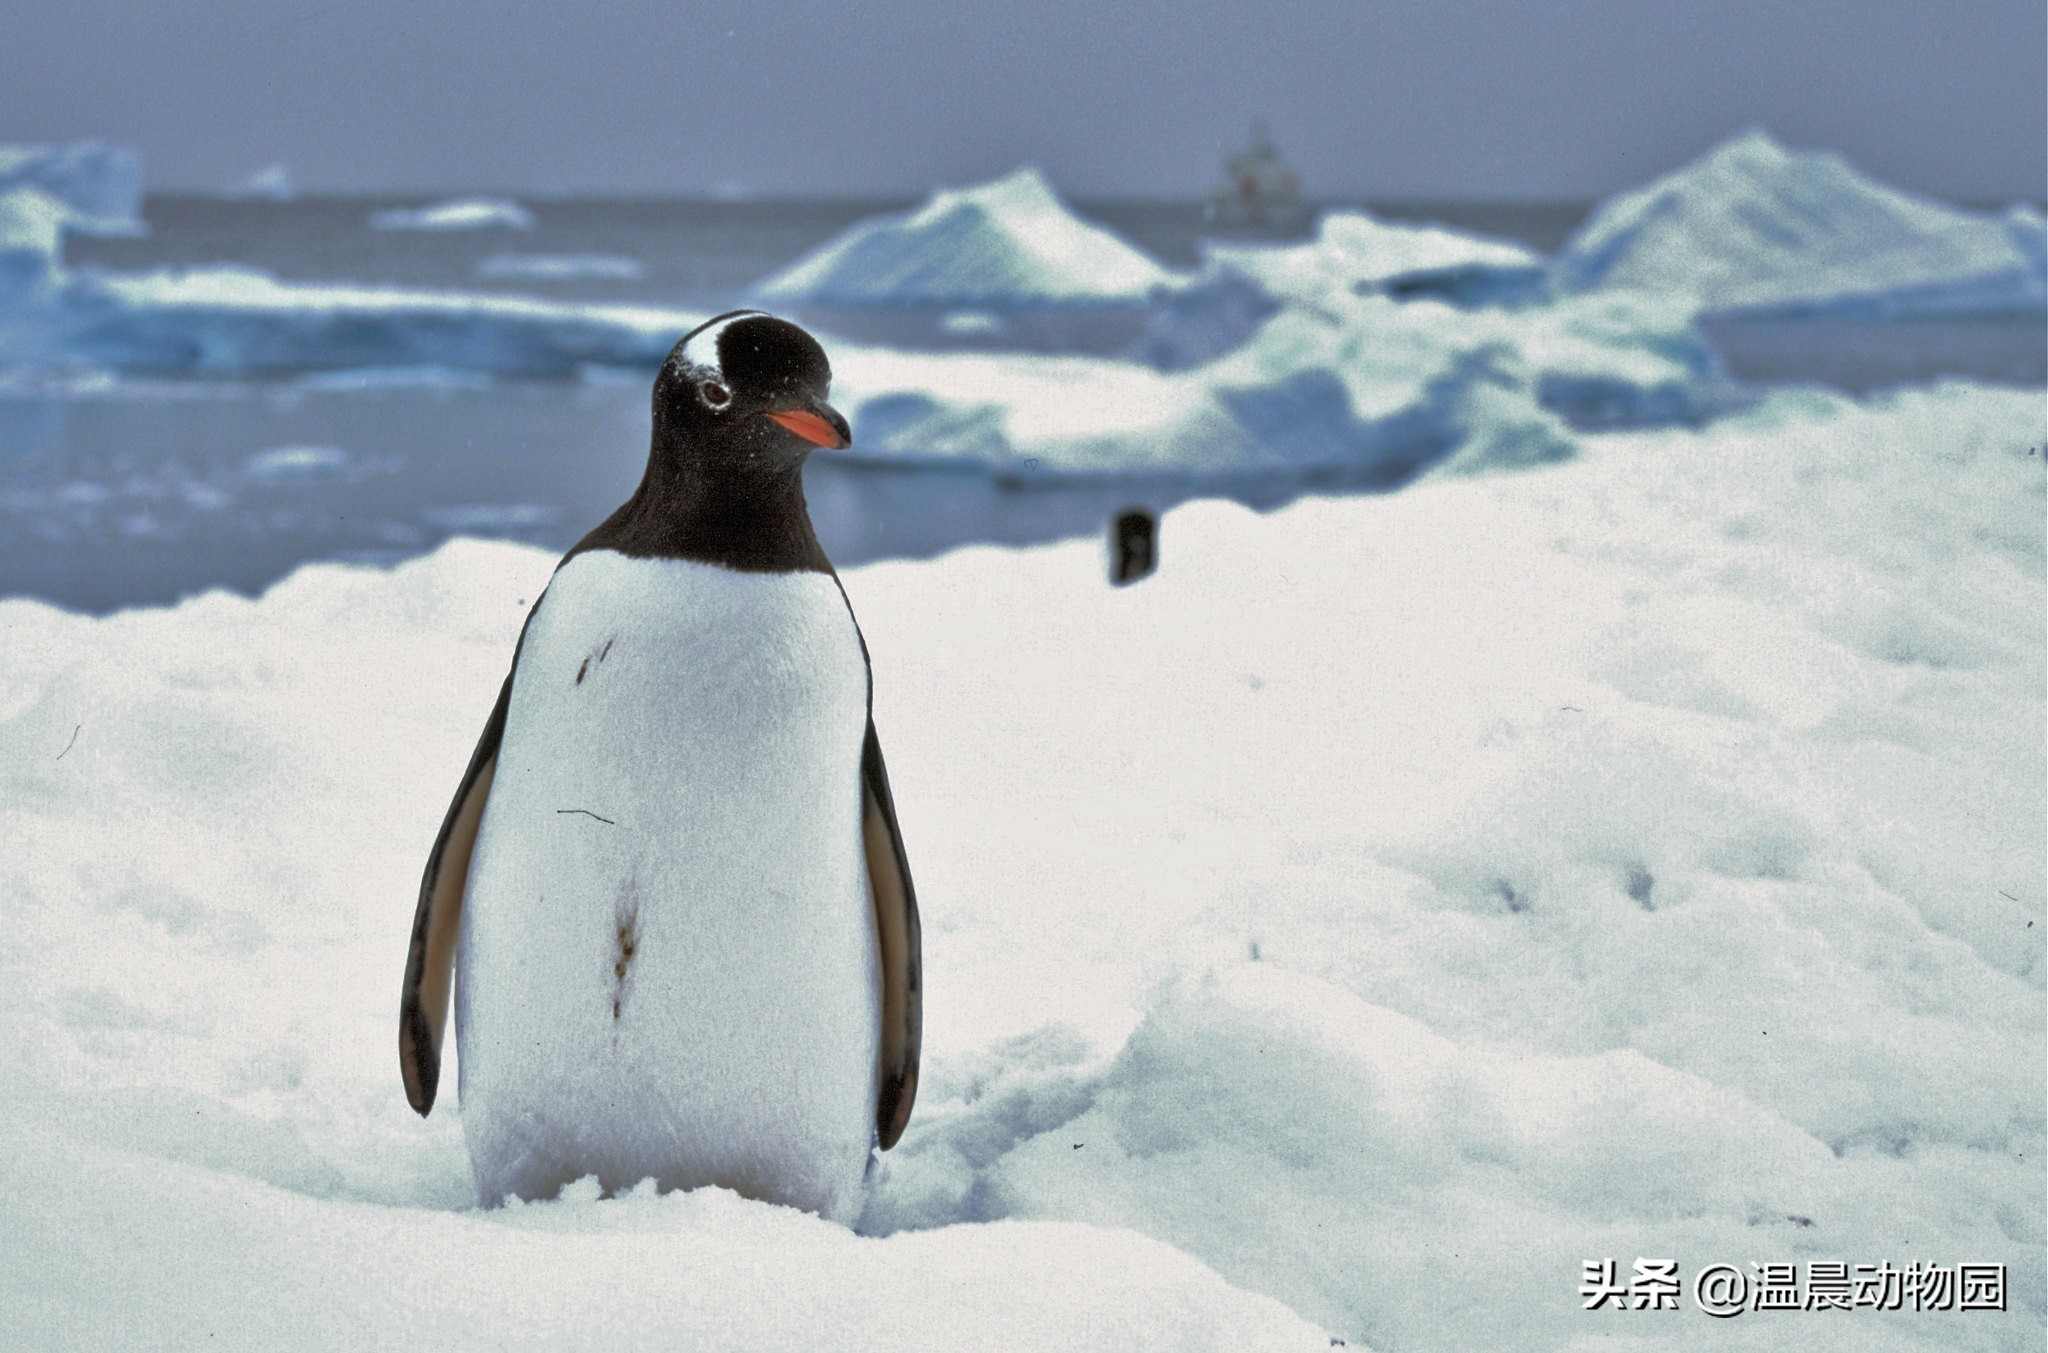 企鹅生活在哪里 企鹅为什么不能在北极